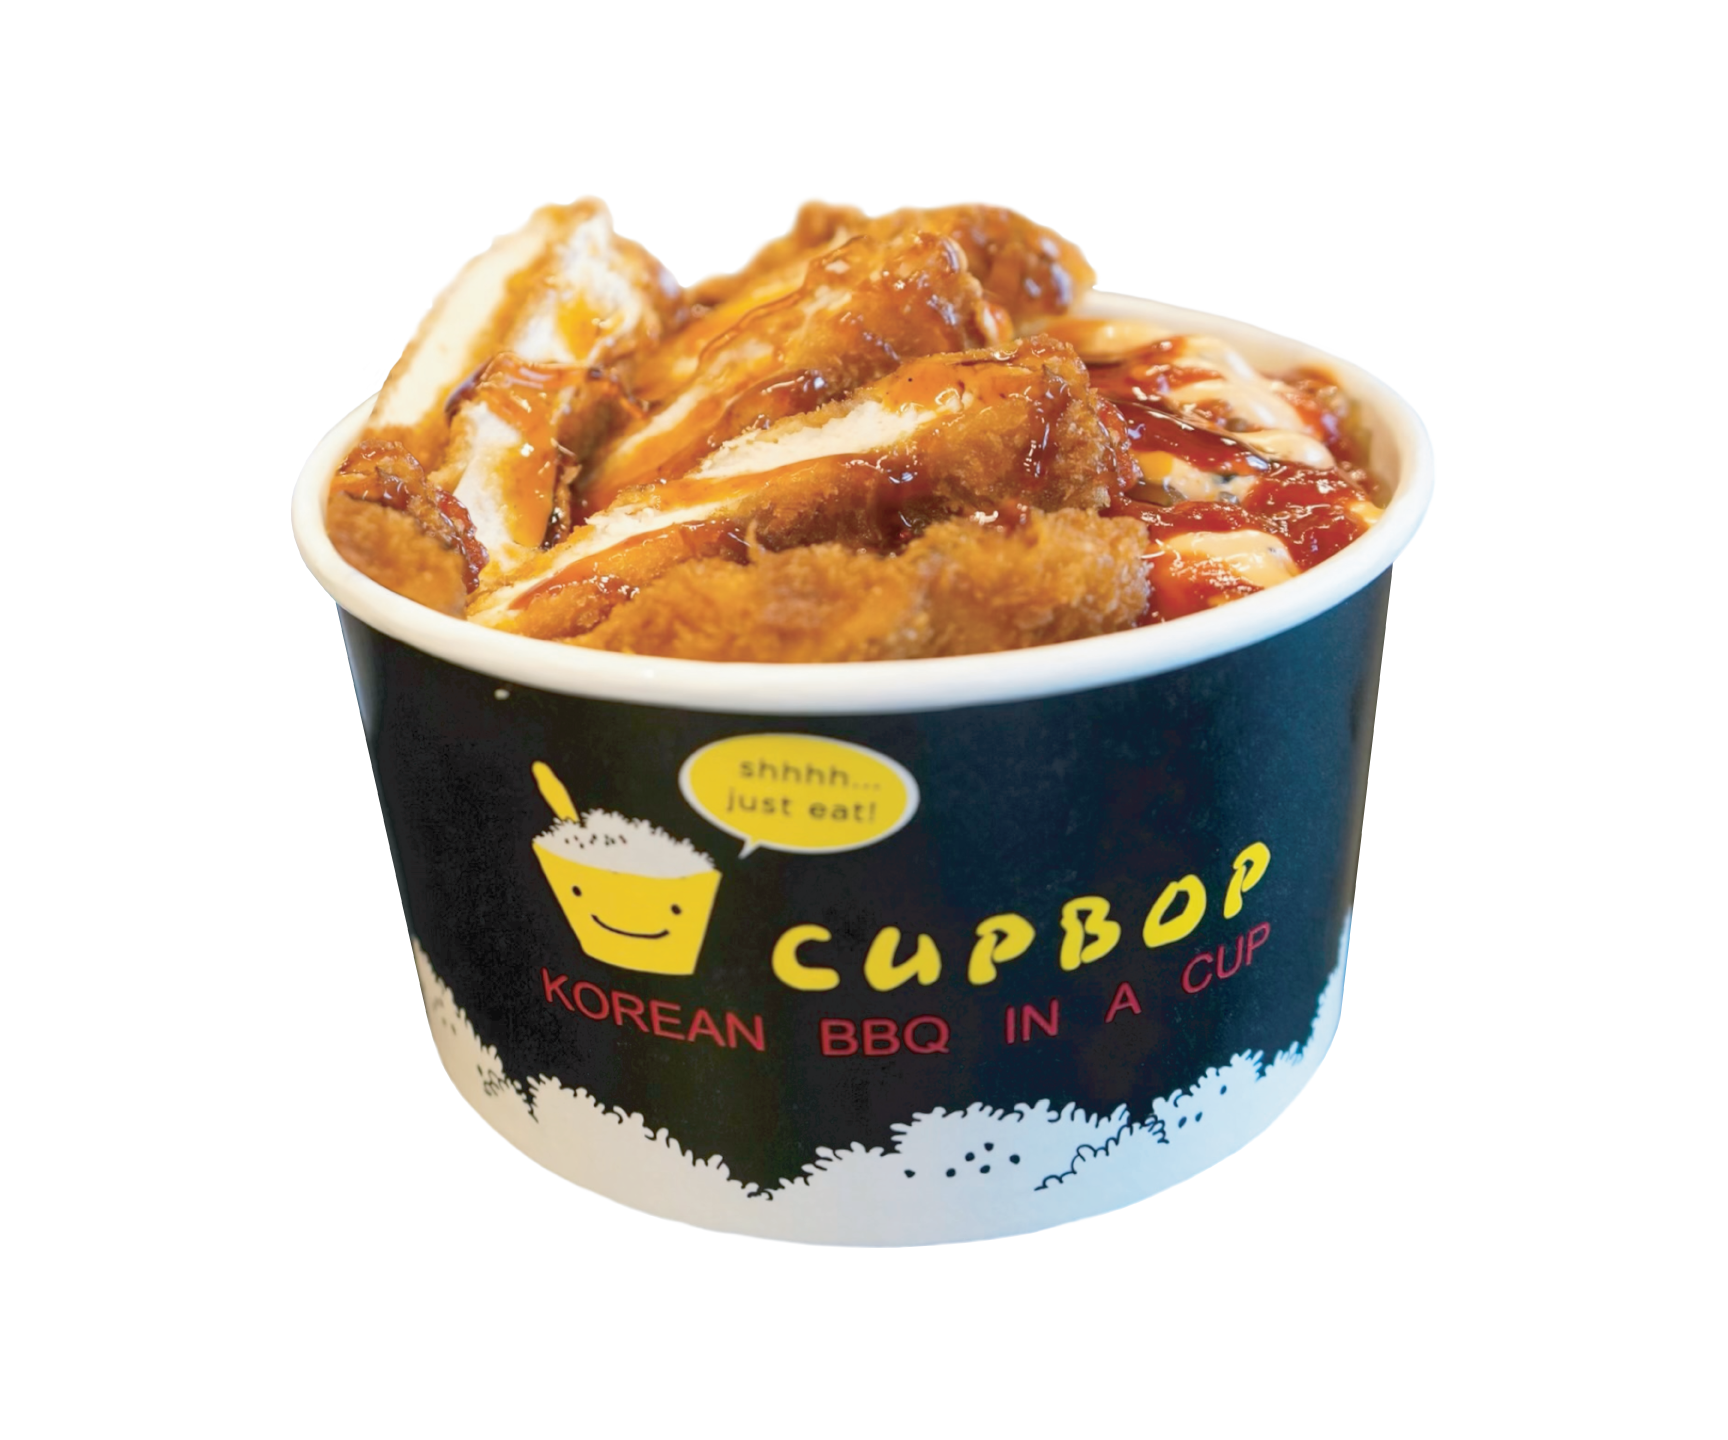 Order 0. Krunch Bop food online from Cupbop store, Layton on bringmethat.com